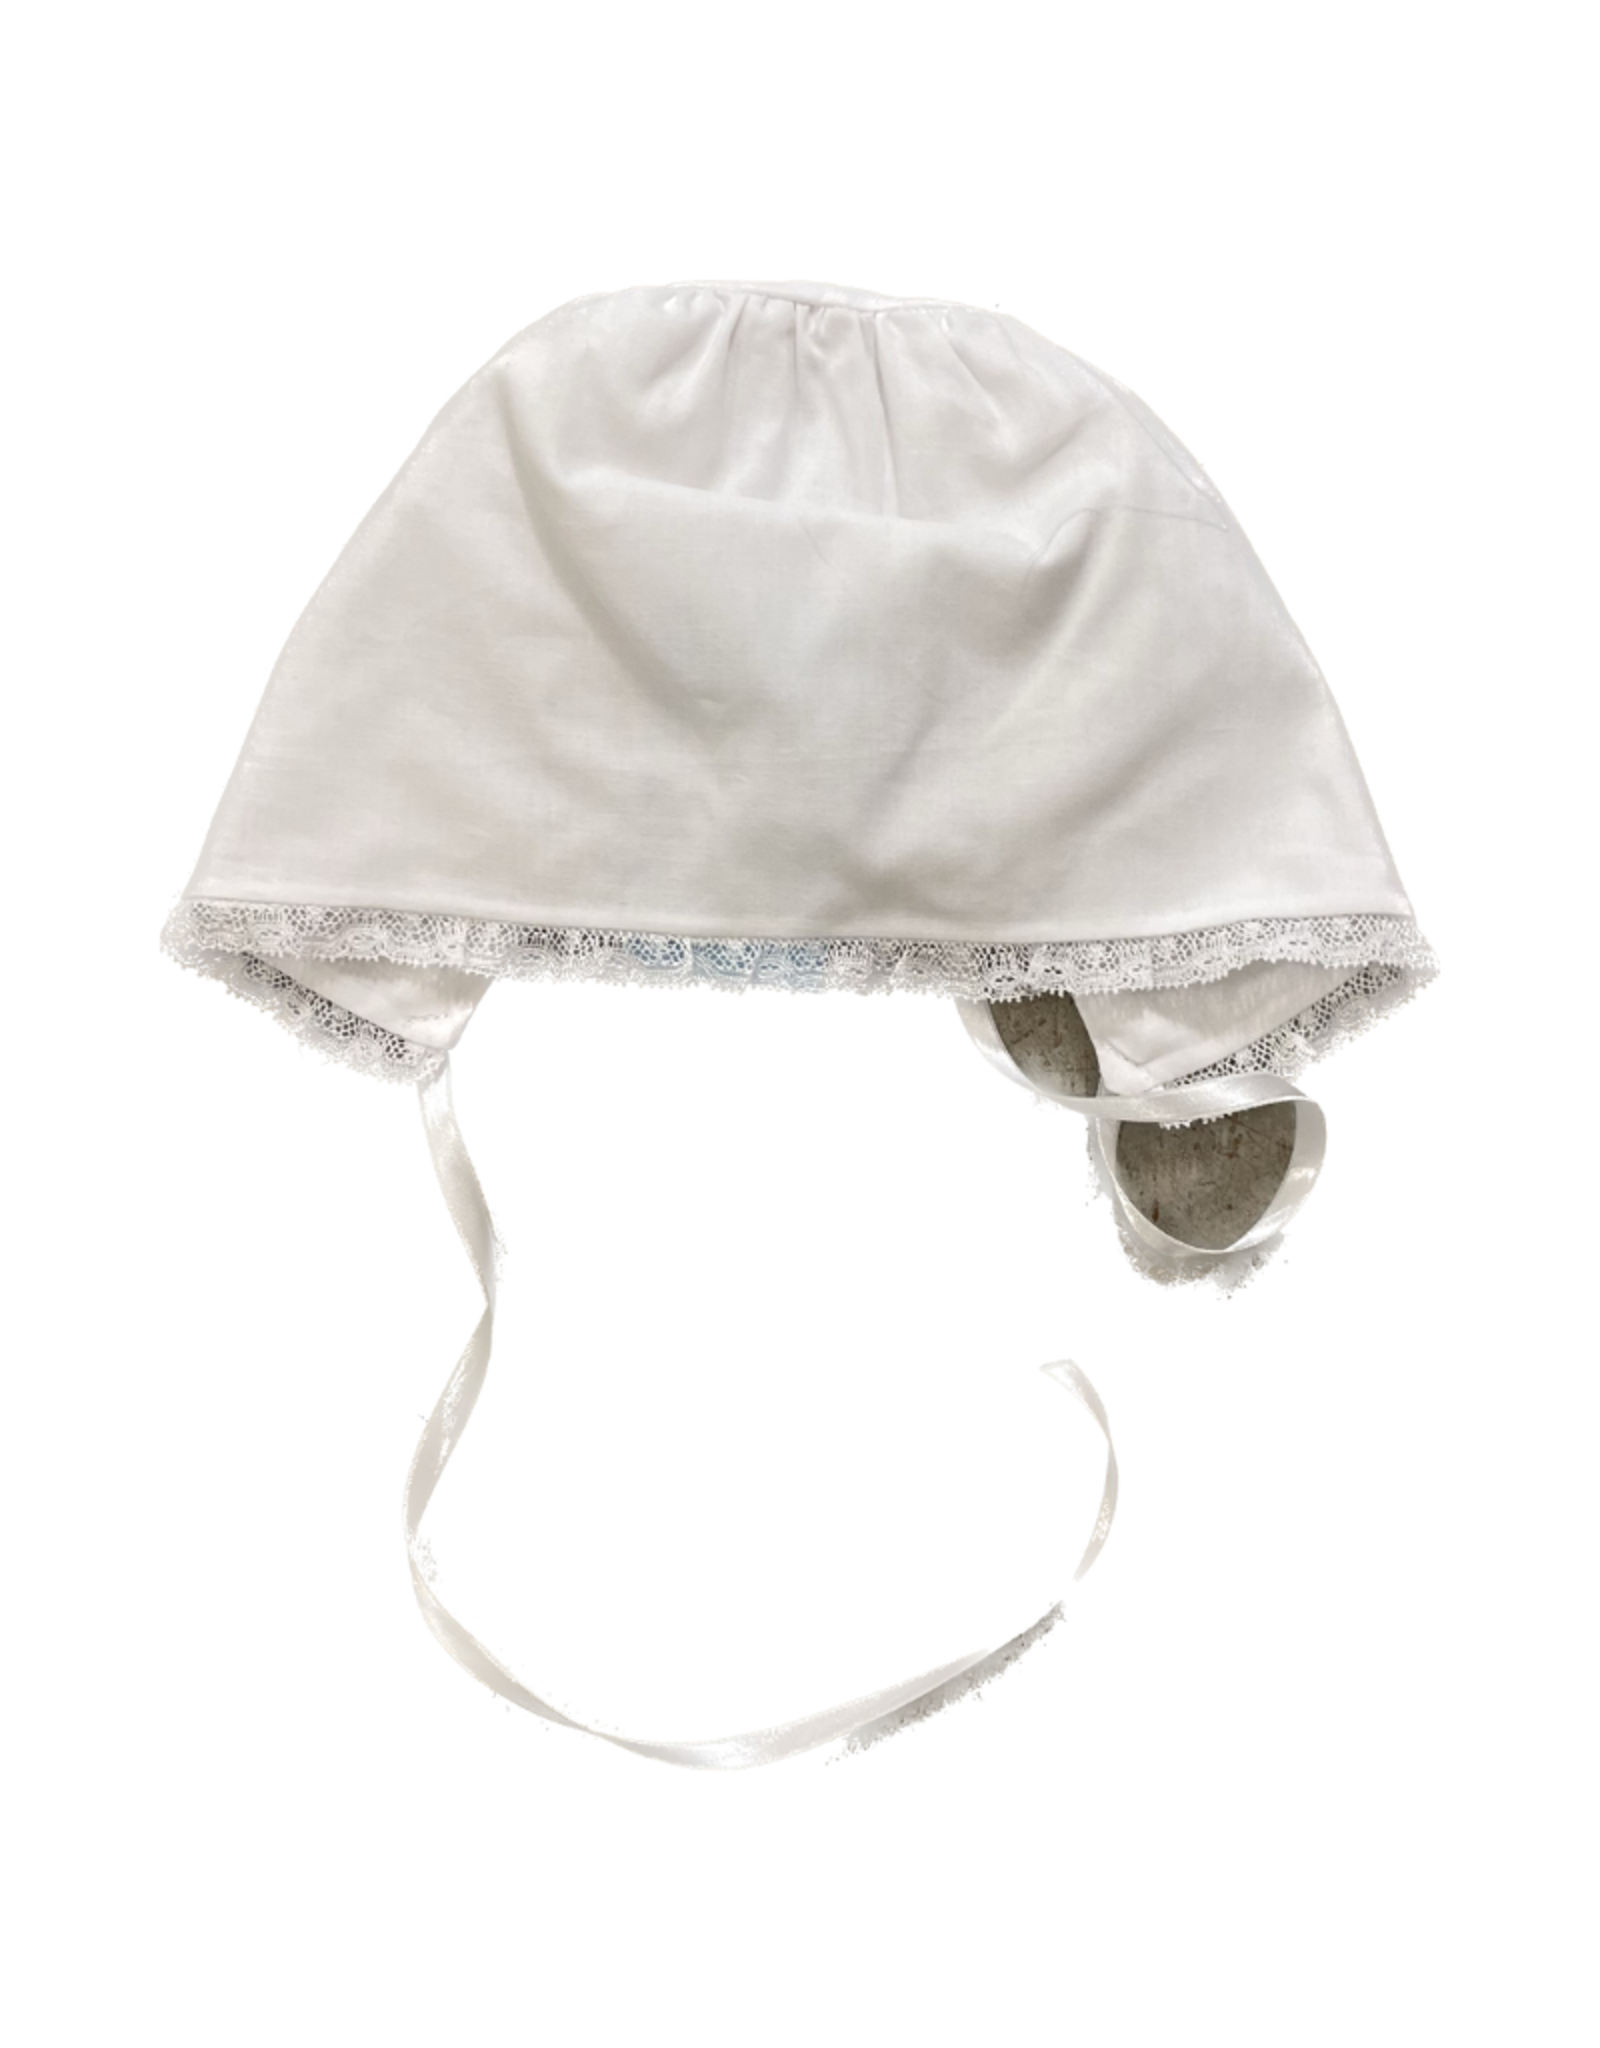 Auraluz Baby Bonnet White W/Lace